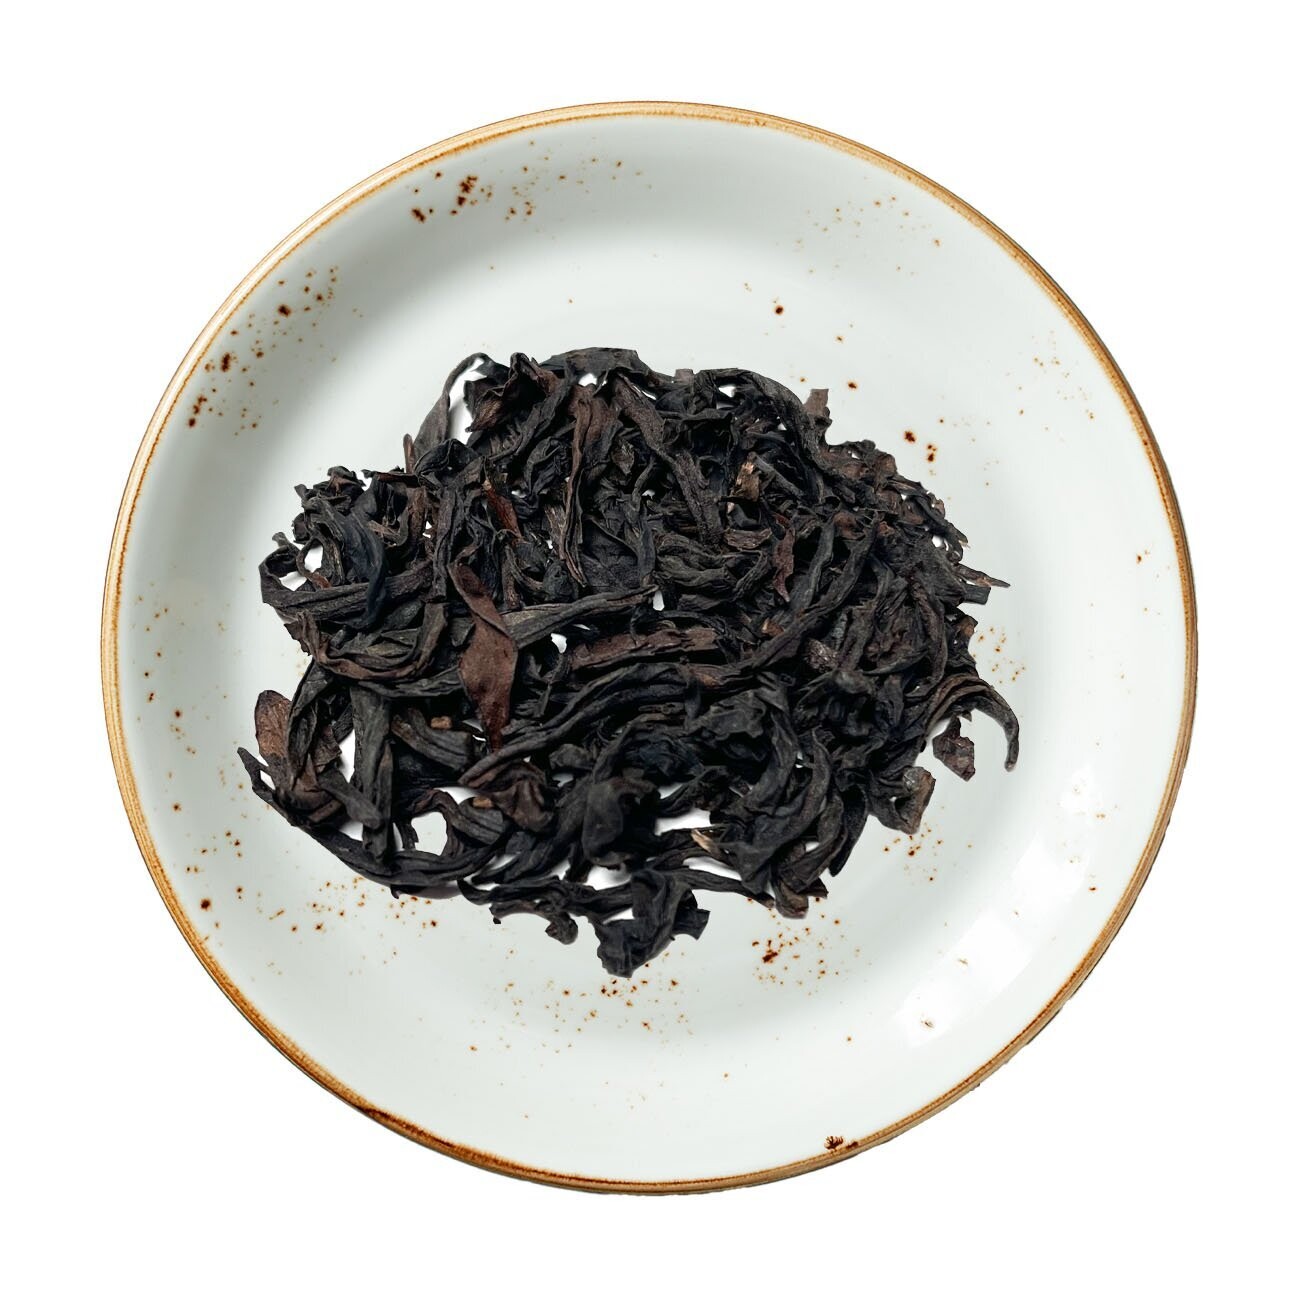 Organic Shui Xian Oolong Tea, Size: One Ounce (28 grams)